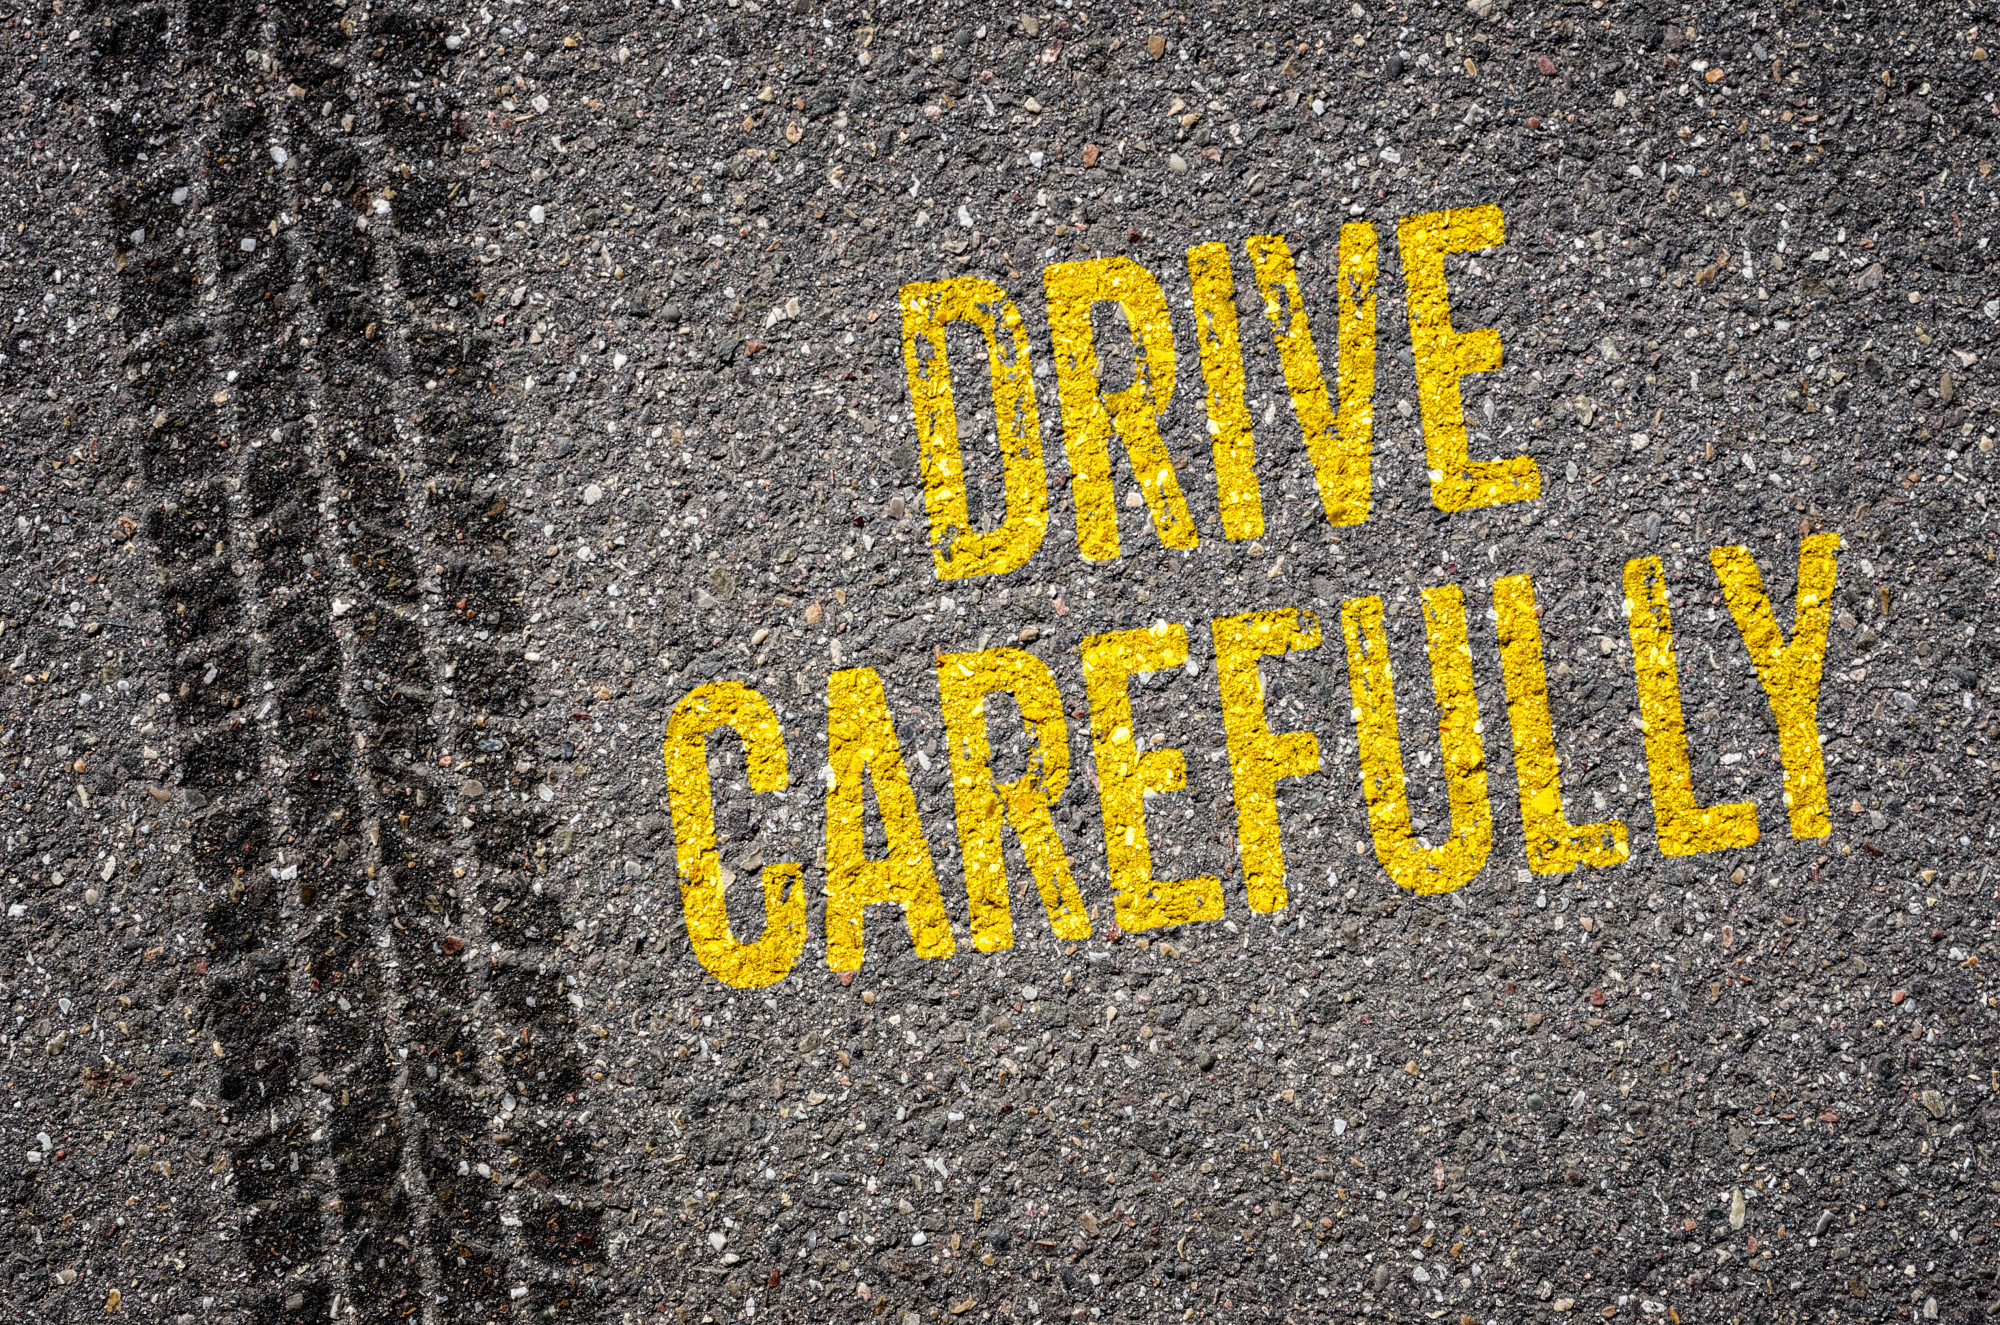 Drive Carefully Signage